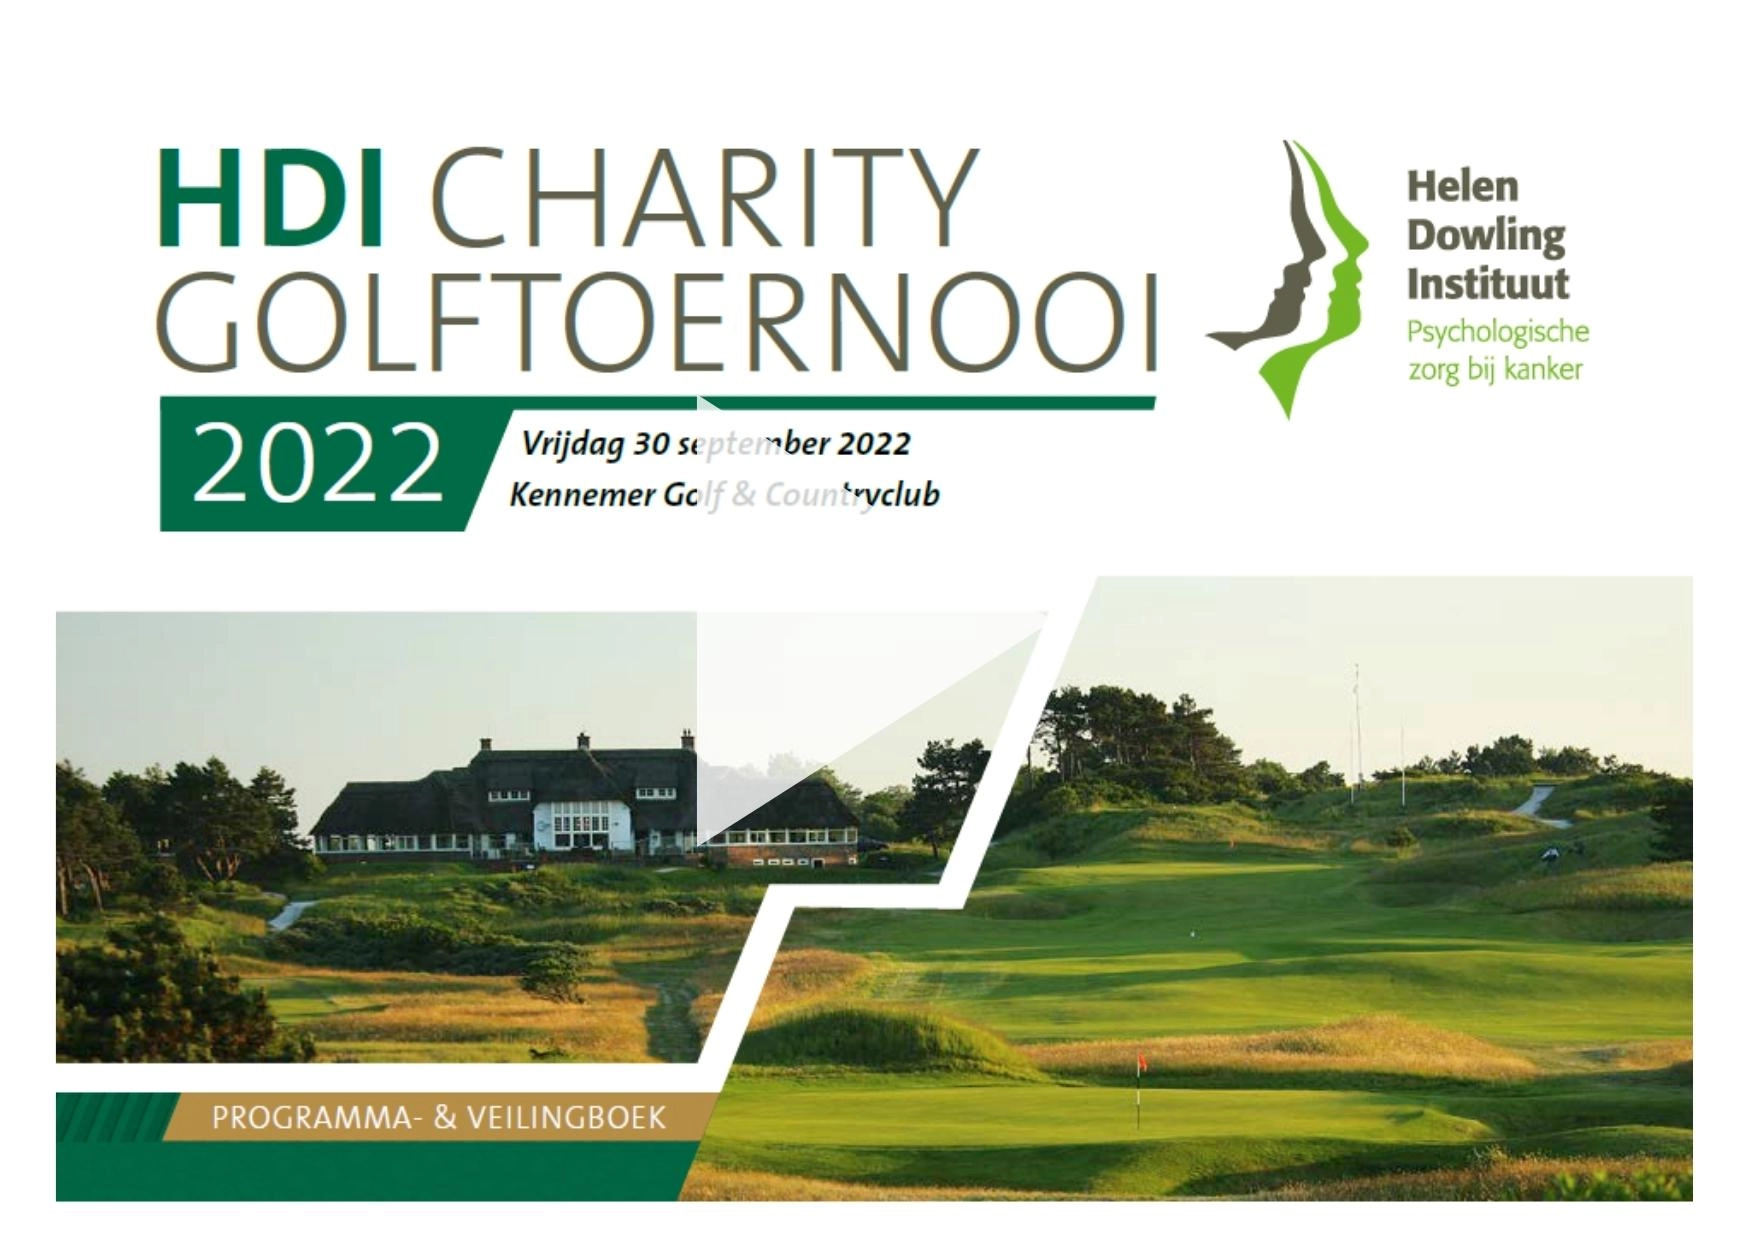 Op de voorkant van het programma- en veilingboekje van het HDI Charity Golftoernooi 2022 staat een play button.